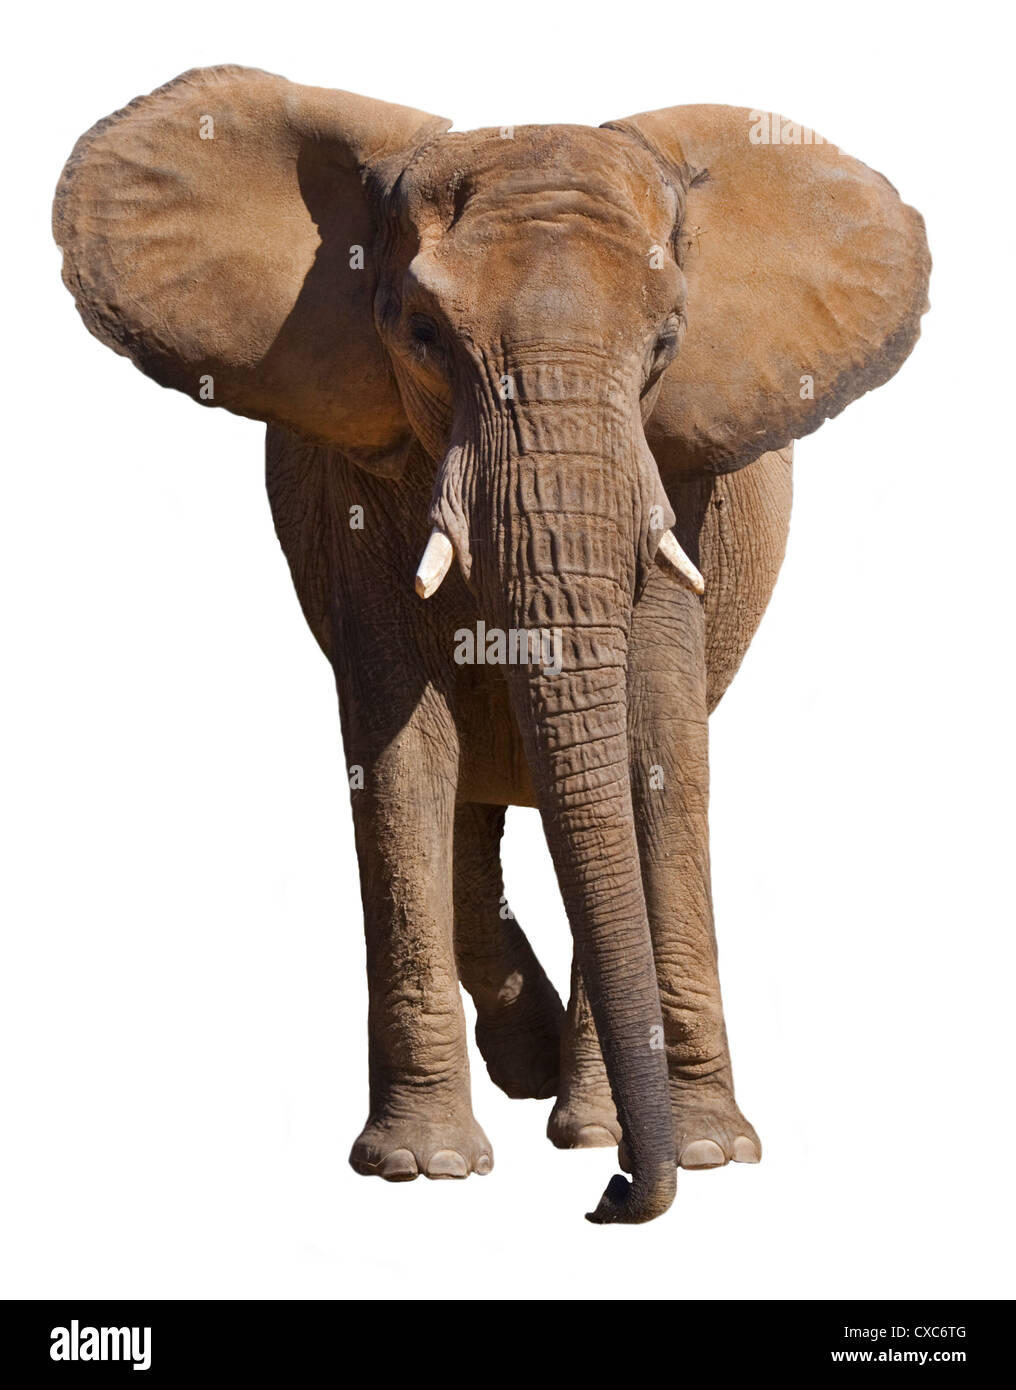 Elefante africano (loxodonta africana) sobre blanco Foto de stock